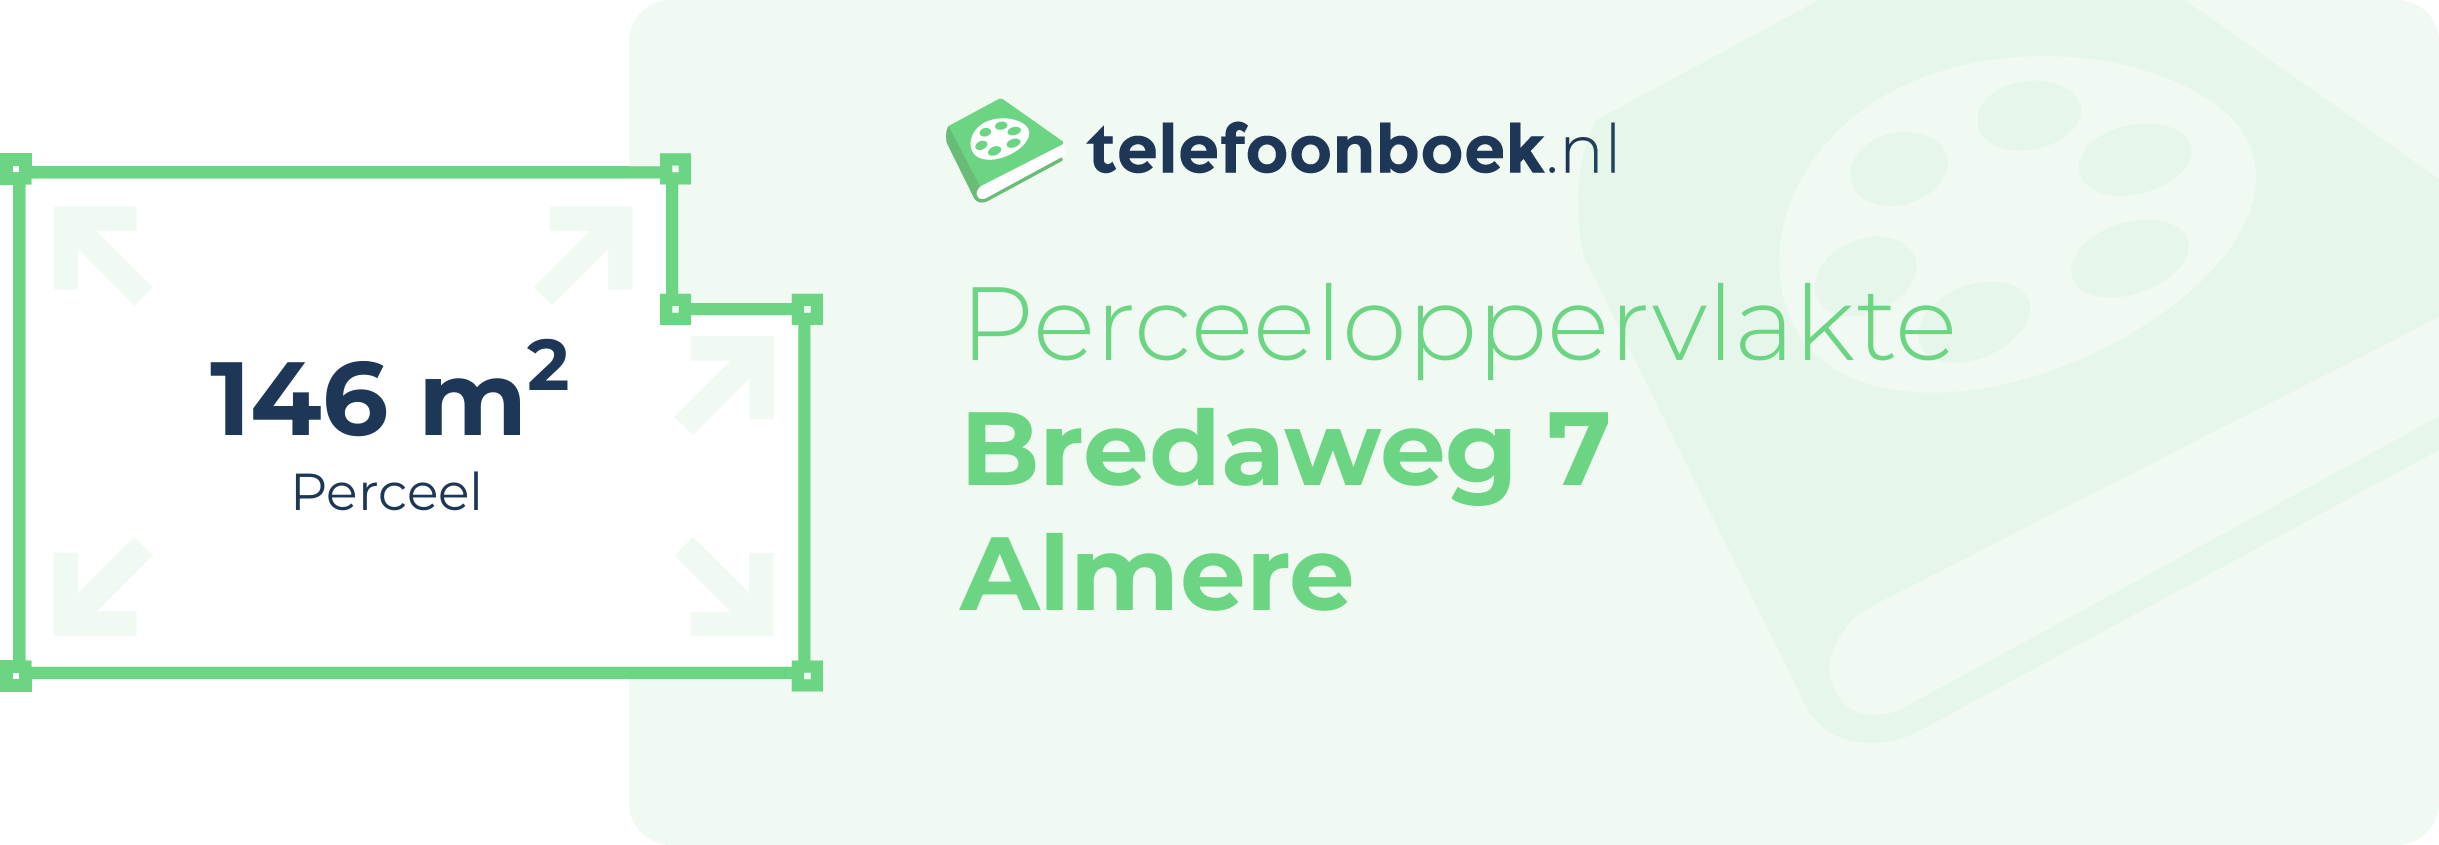 Perceeloppervlakte Bredaweg 7 Almere